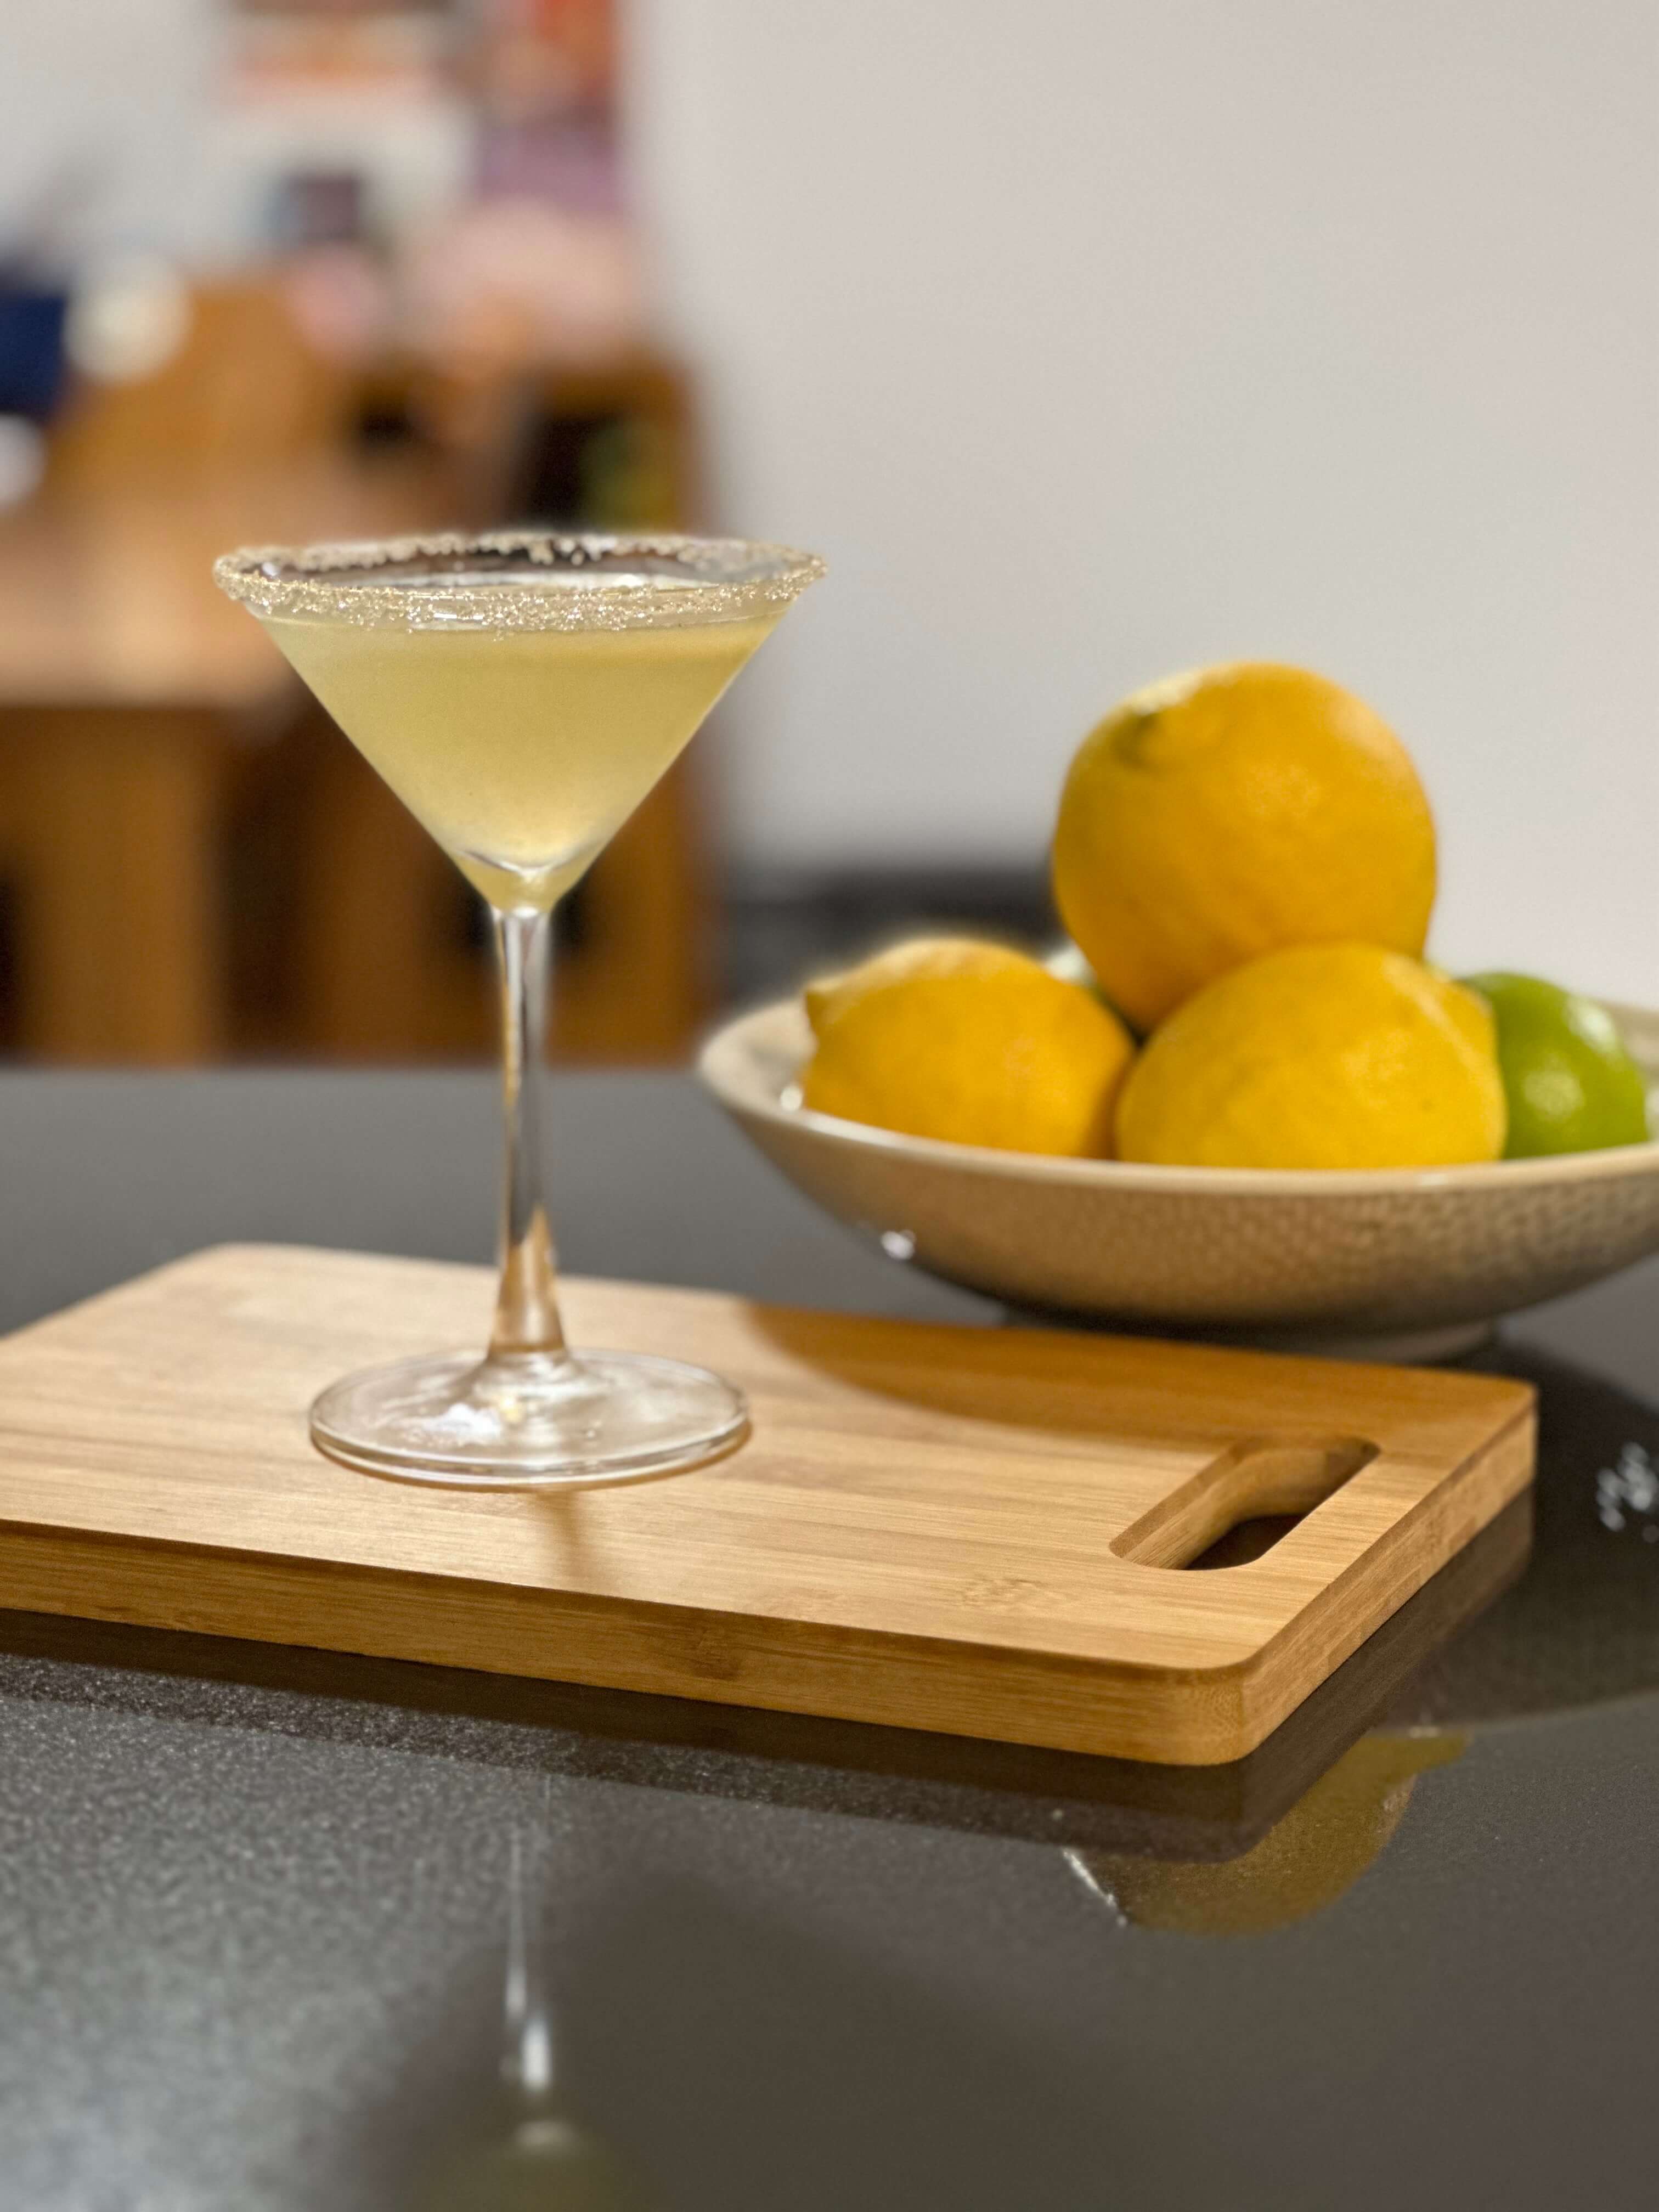 A handmade lemon drop martini posed with bowl of lemons and limes.